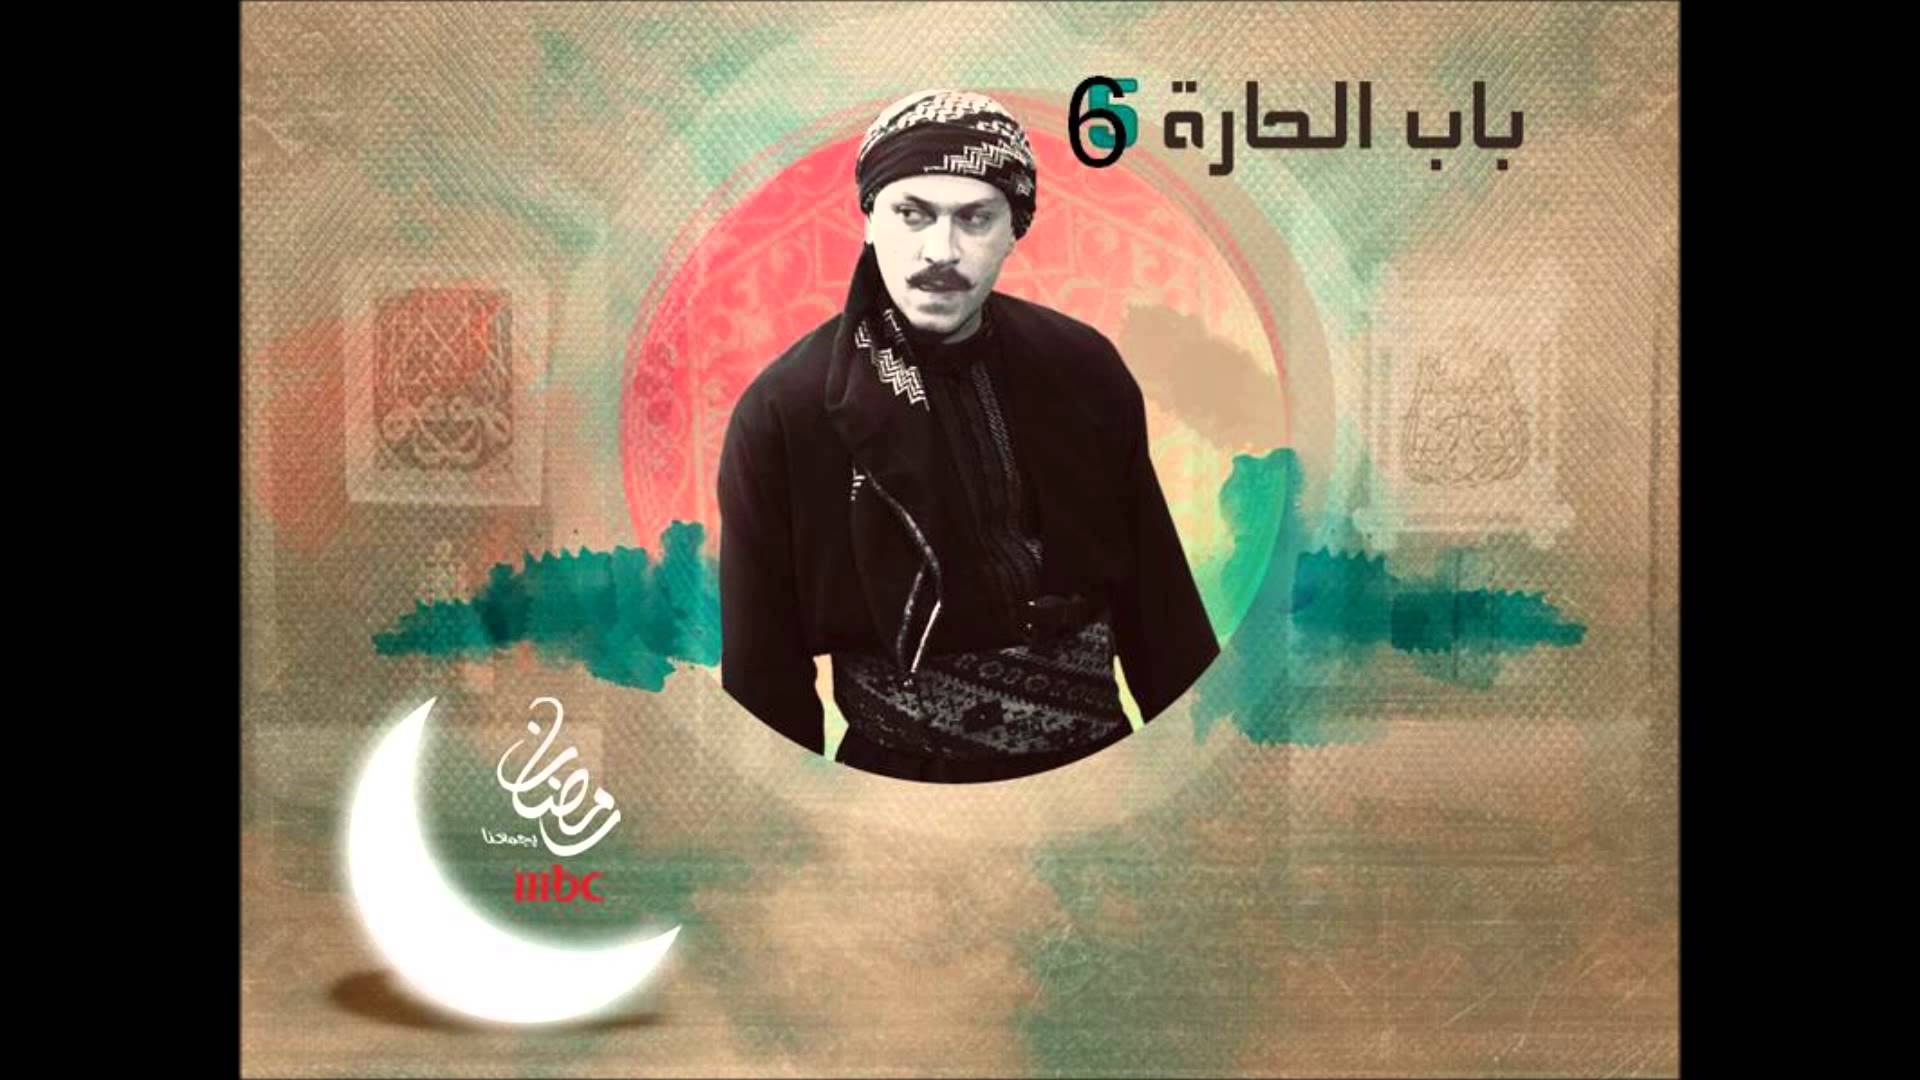 بالفيديو اعلان مسلسل باب الحارة 6 على قناة mbc رمضان 2014